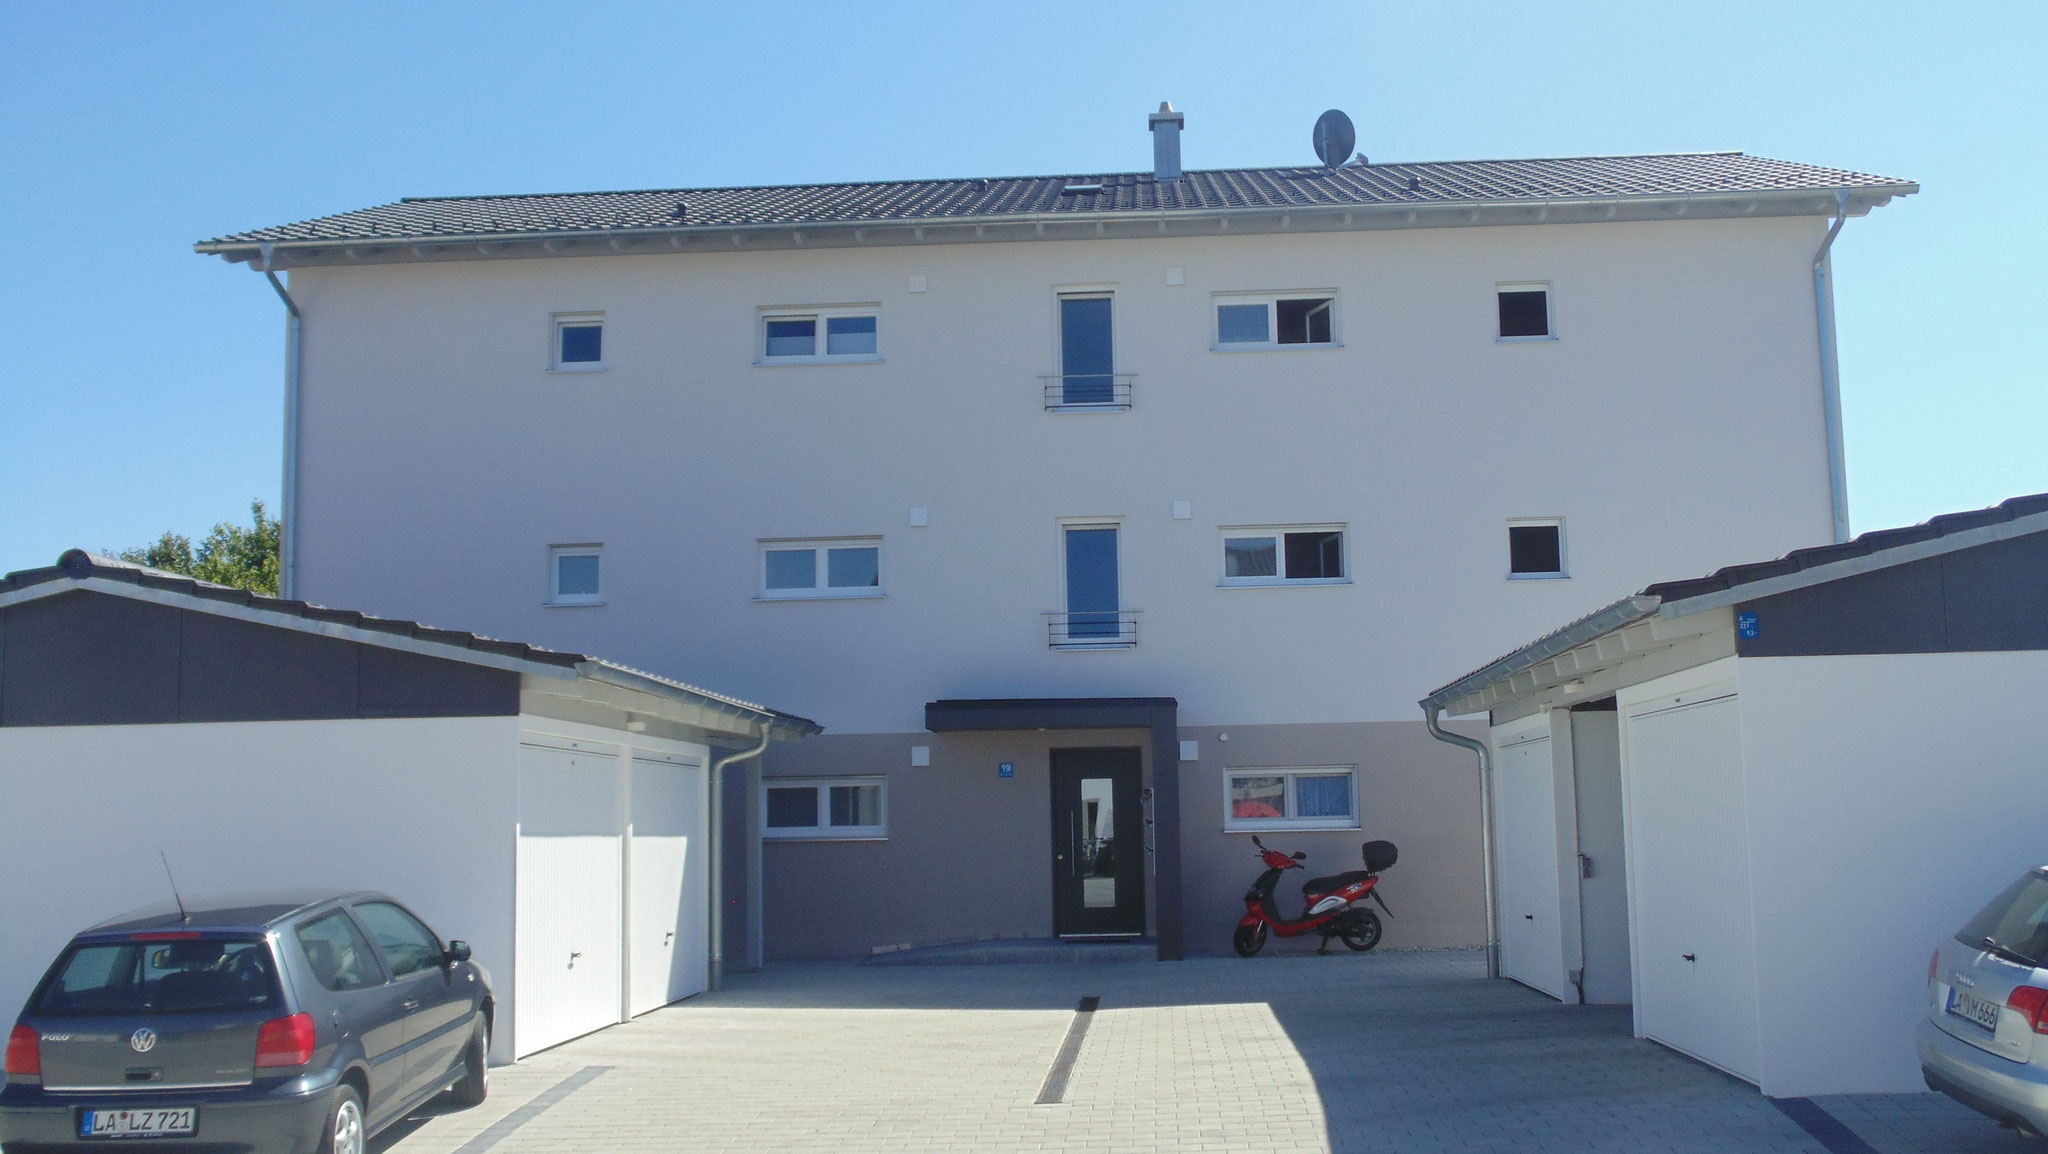 Neubau von 2 Mehrfamilienwohnhäusern mit 6 Wohneinheiten, Niederaichbach 2016 - Gebäude 1